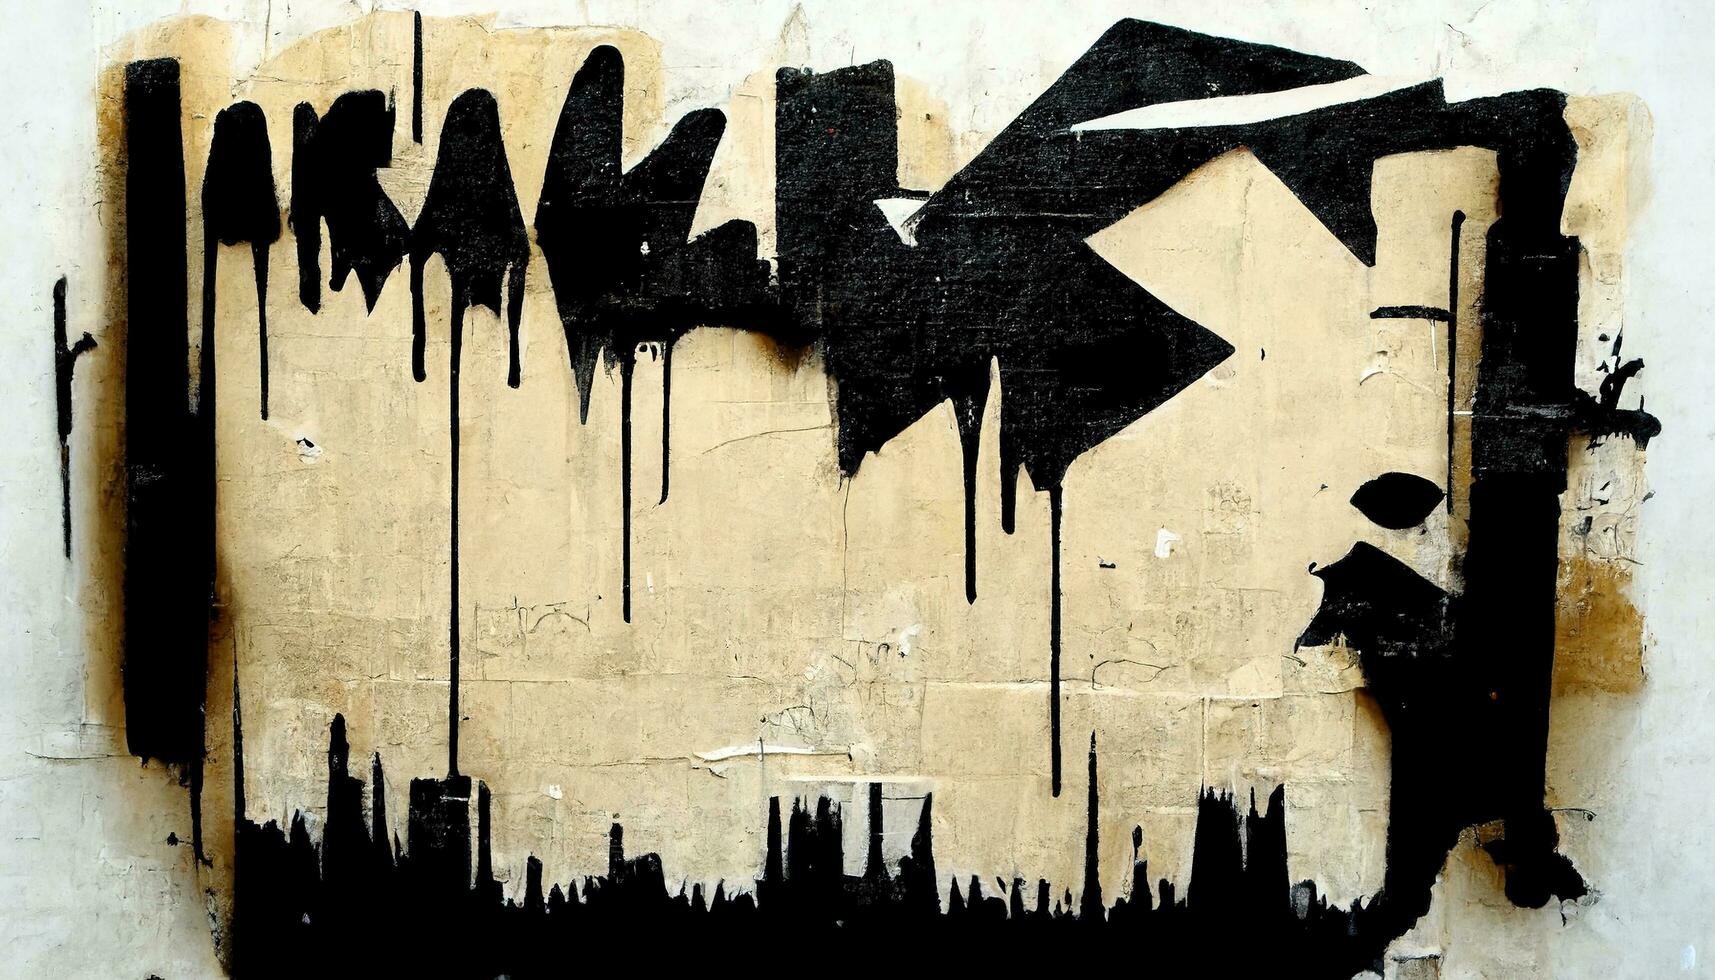 generativ ai, Tinte schwarz Straße Graffiti Kunst auf ein texturiert Papier Jahrgang Hintergrund, inspiriert durch Banken. foto